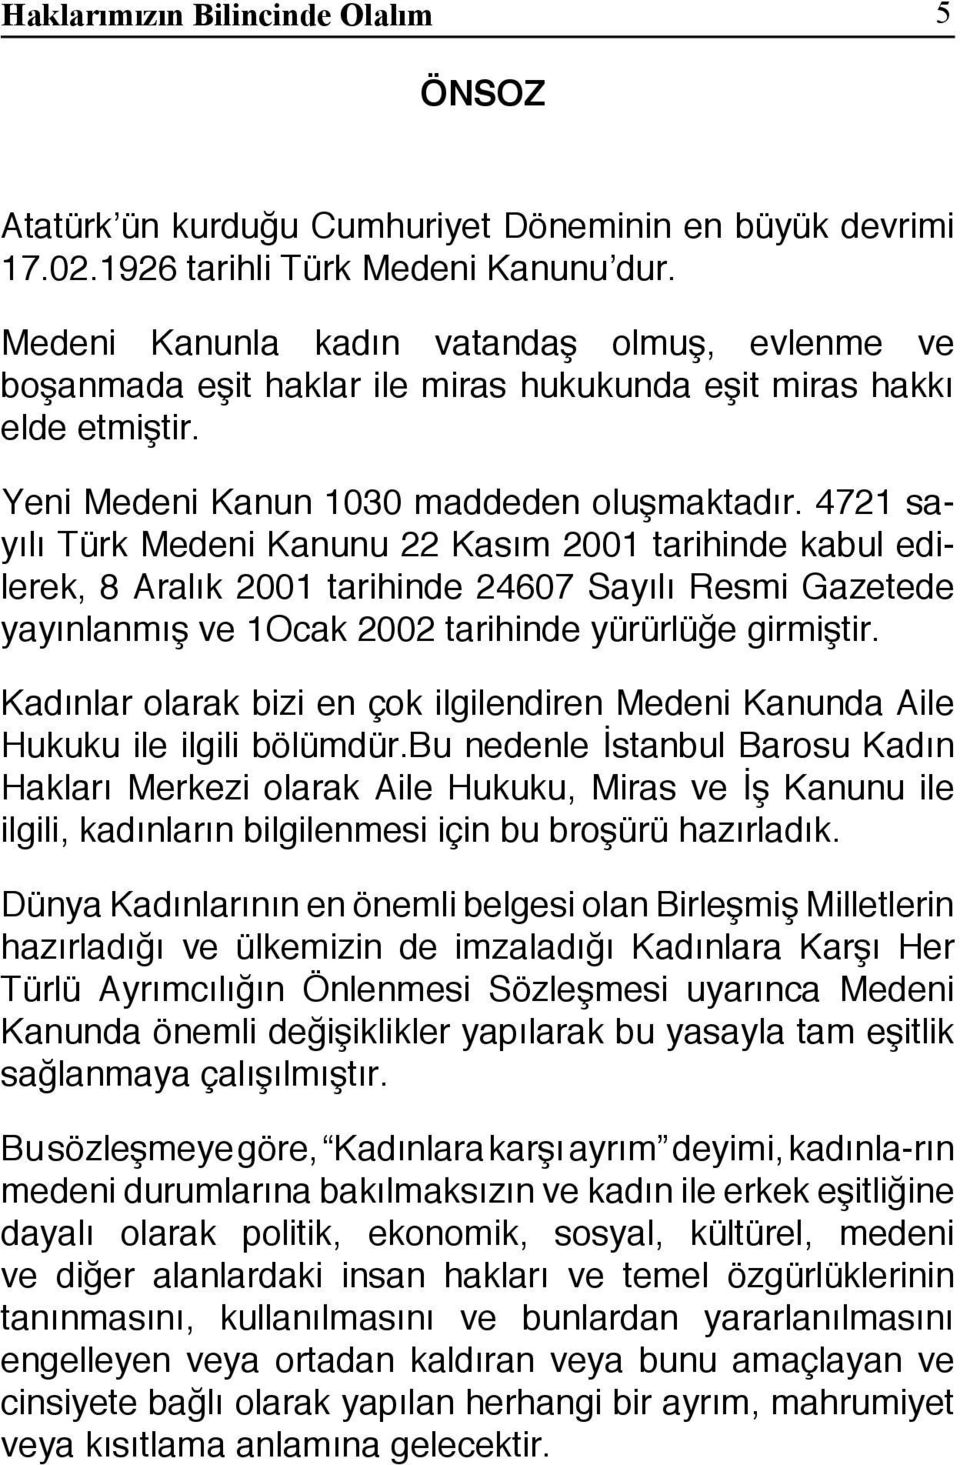 4721 sayılı Türk Medeni Kanunu 22 Kasım 2001 tarihinde kabul edilerek, 8 Aralık 2001 tarihinde 24607 Sayılı Resmi Gazetede yayınlanmış ve 1Ocak 2002 tarihinde yürürlüğe girmiştir.